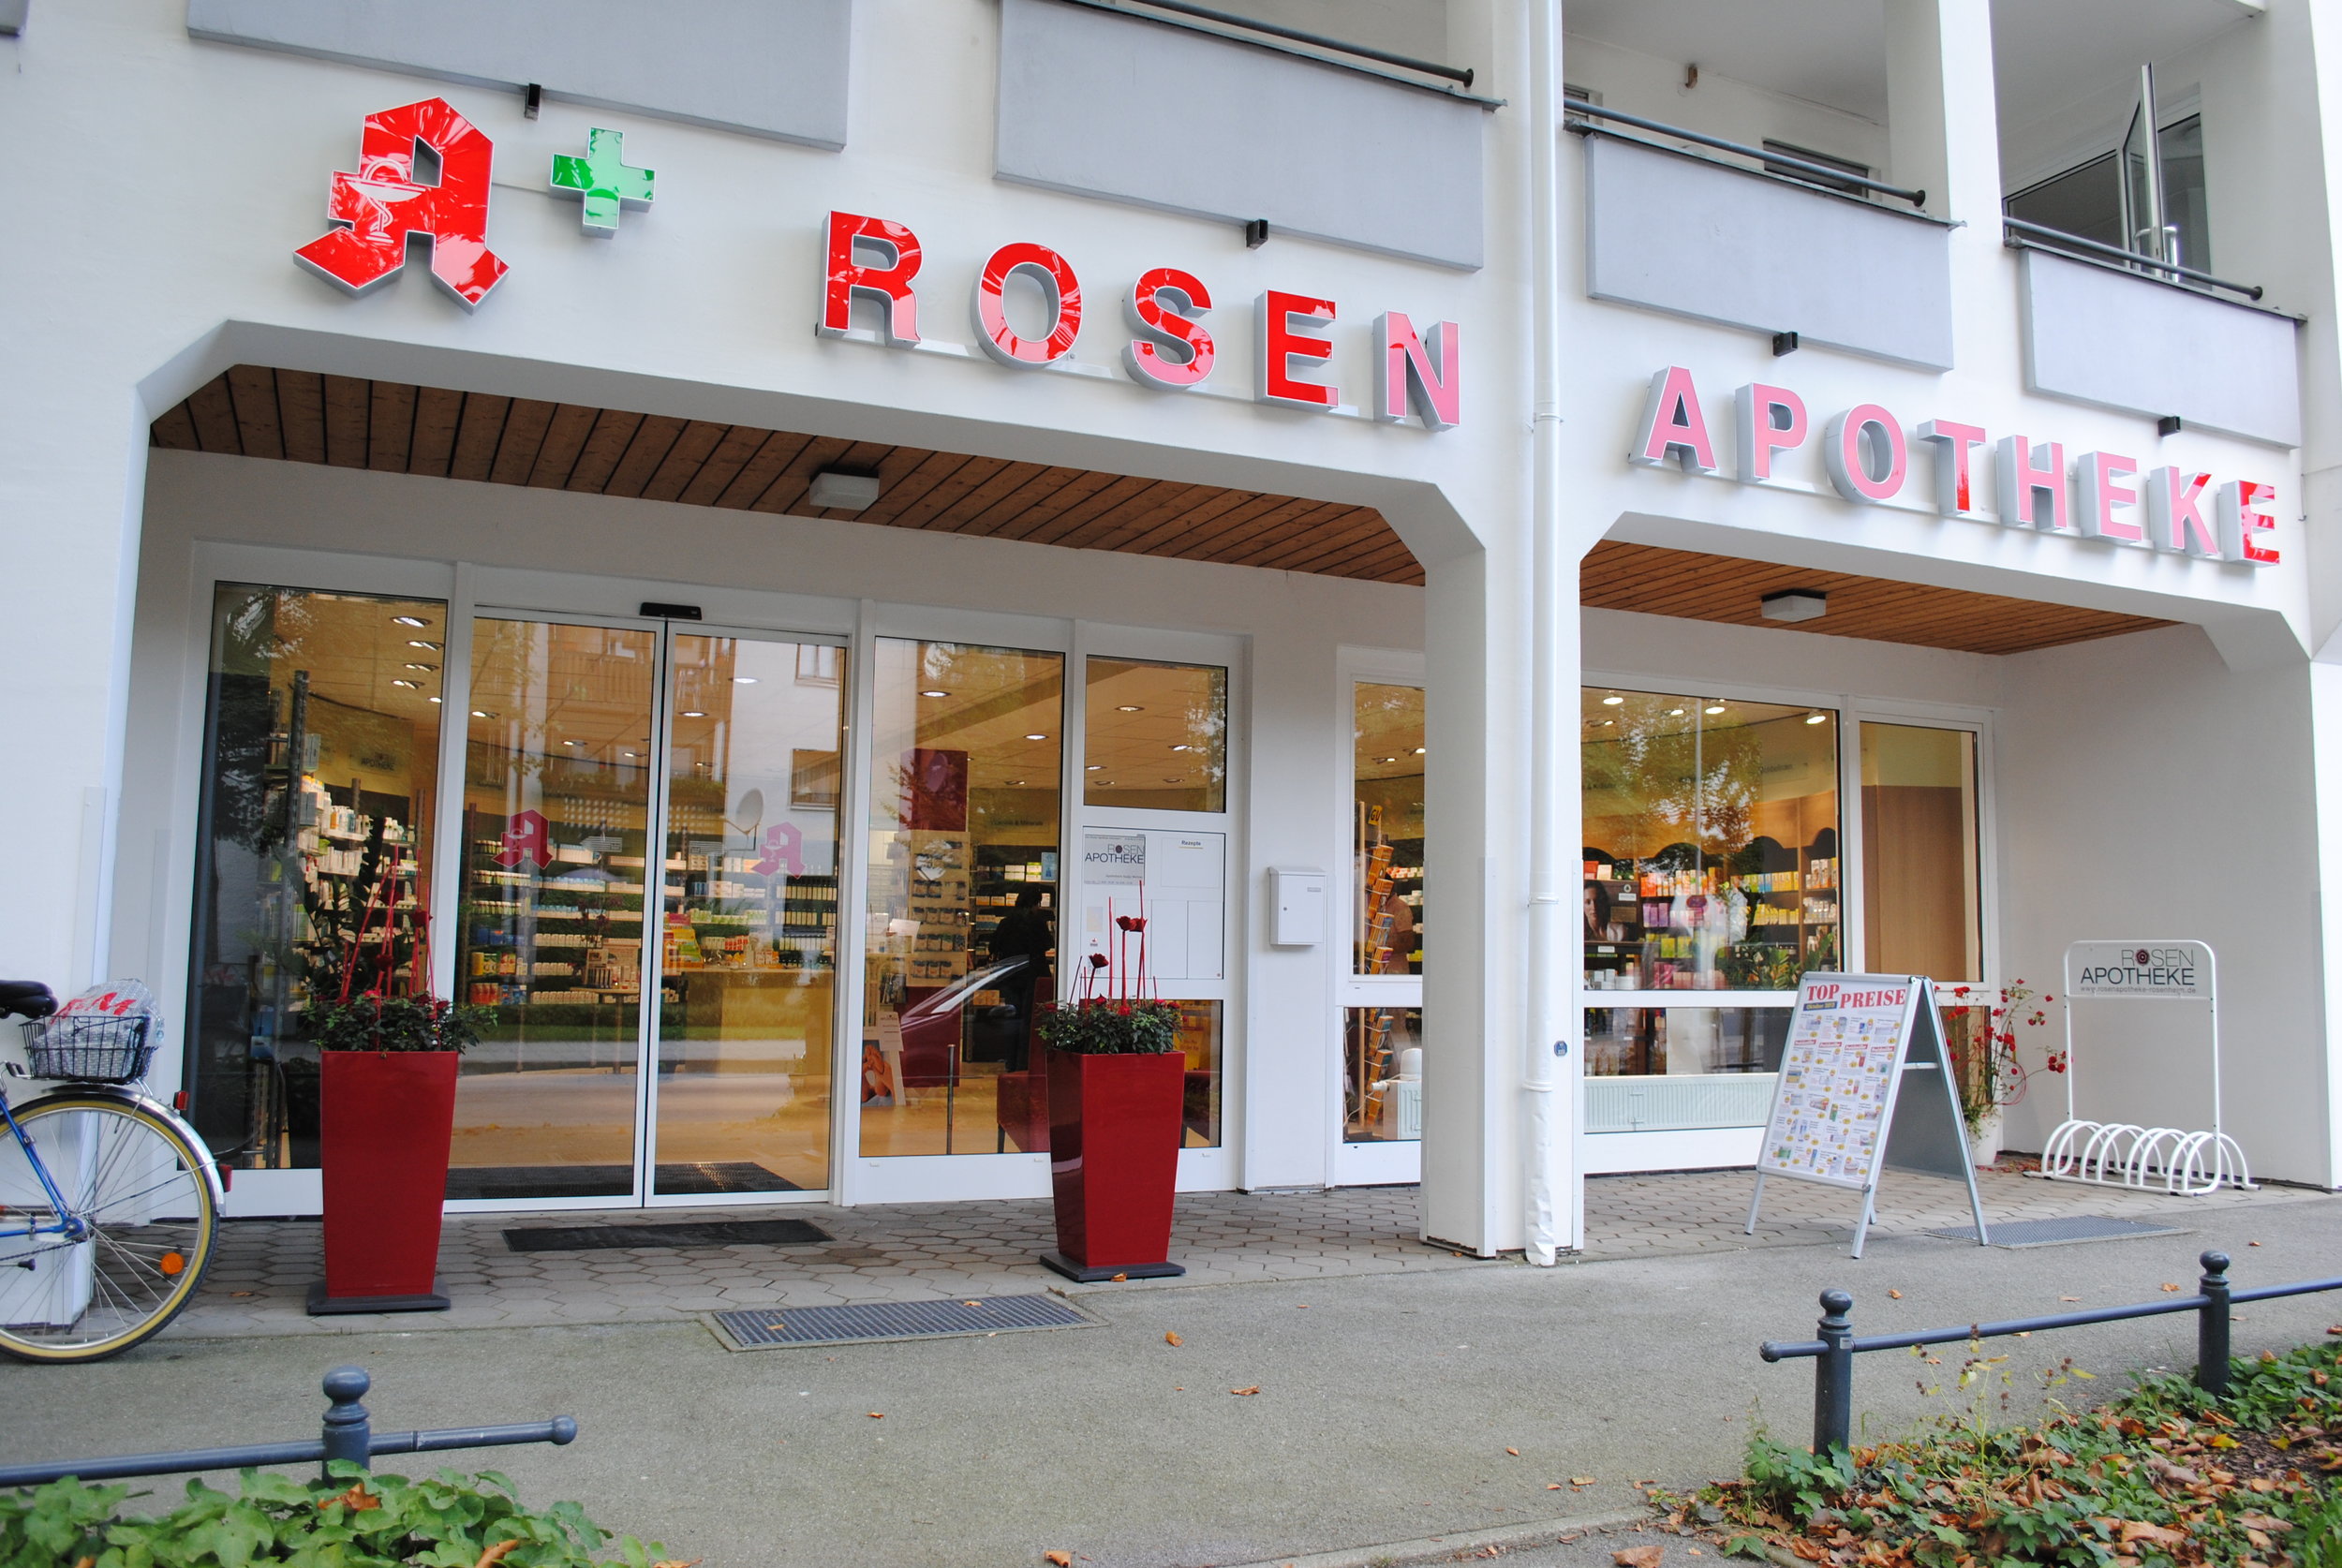 Rosen Apotheke, Rosenheim